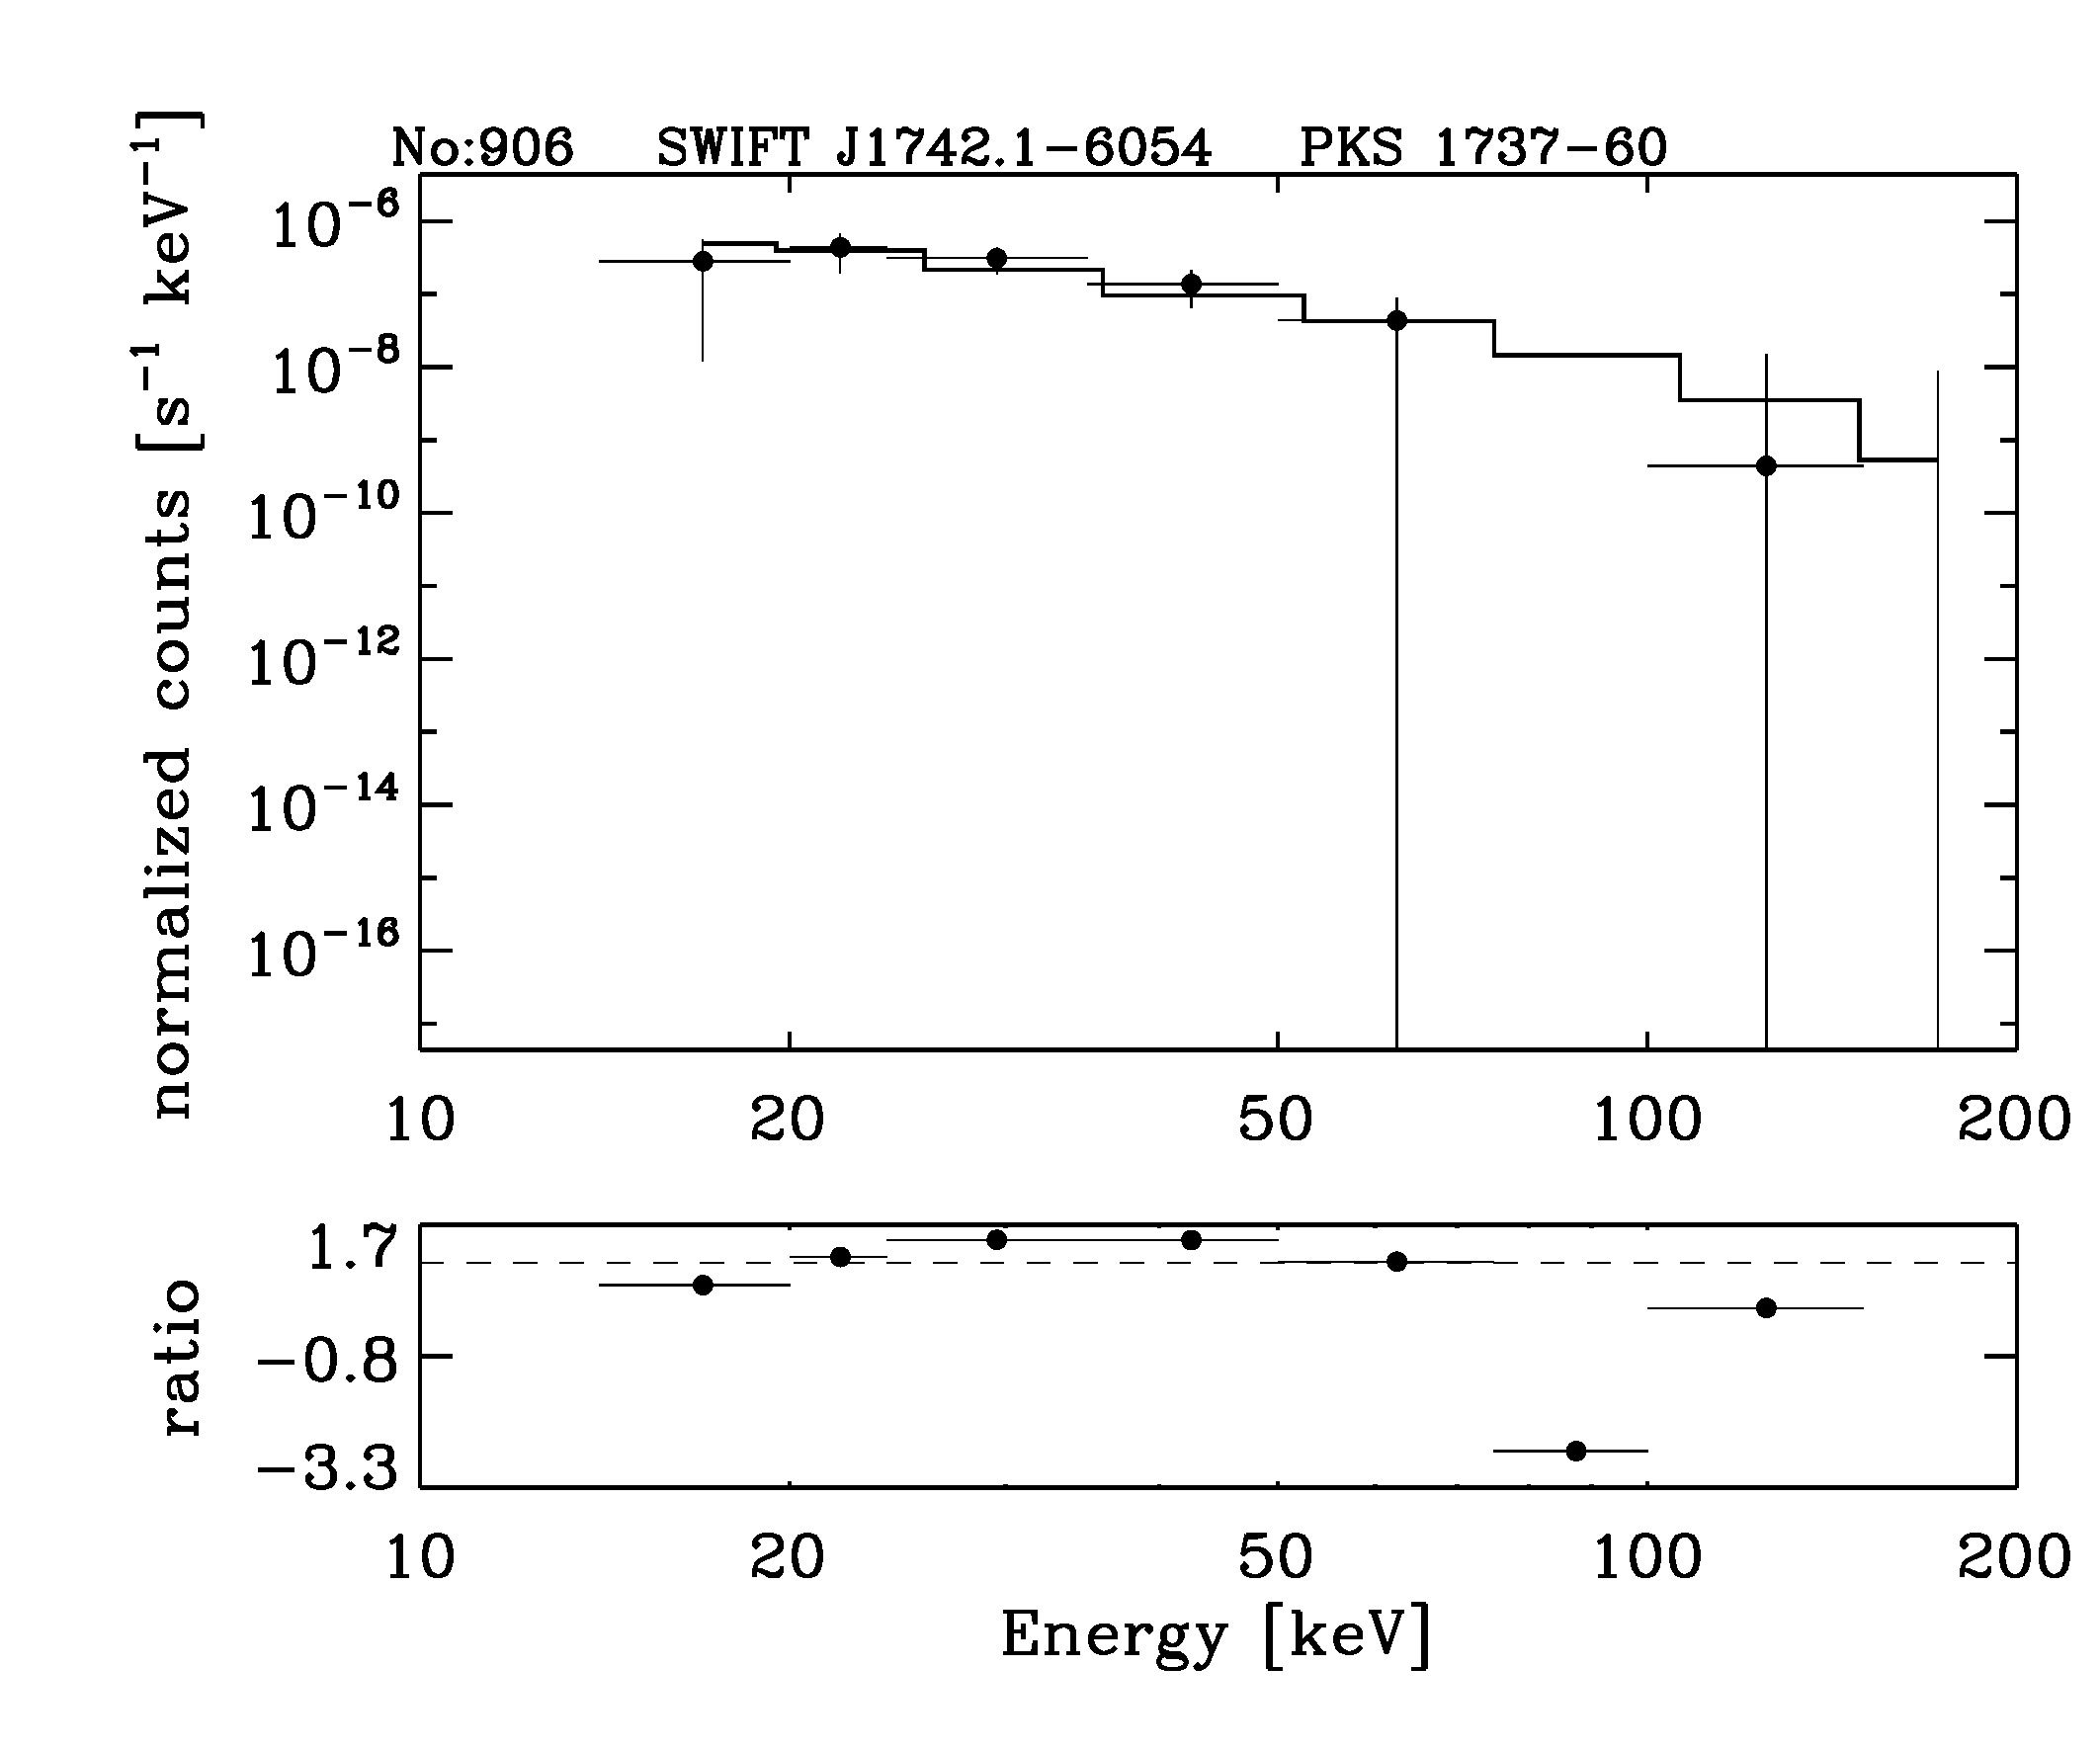 BAT Spectrum for SWIFT J1742.1-6054